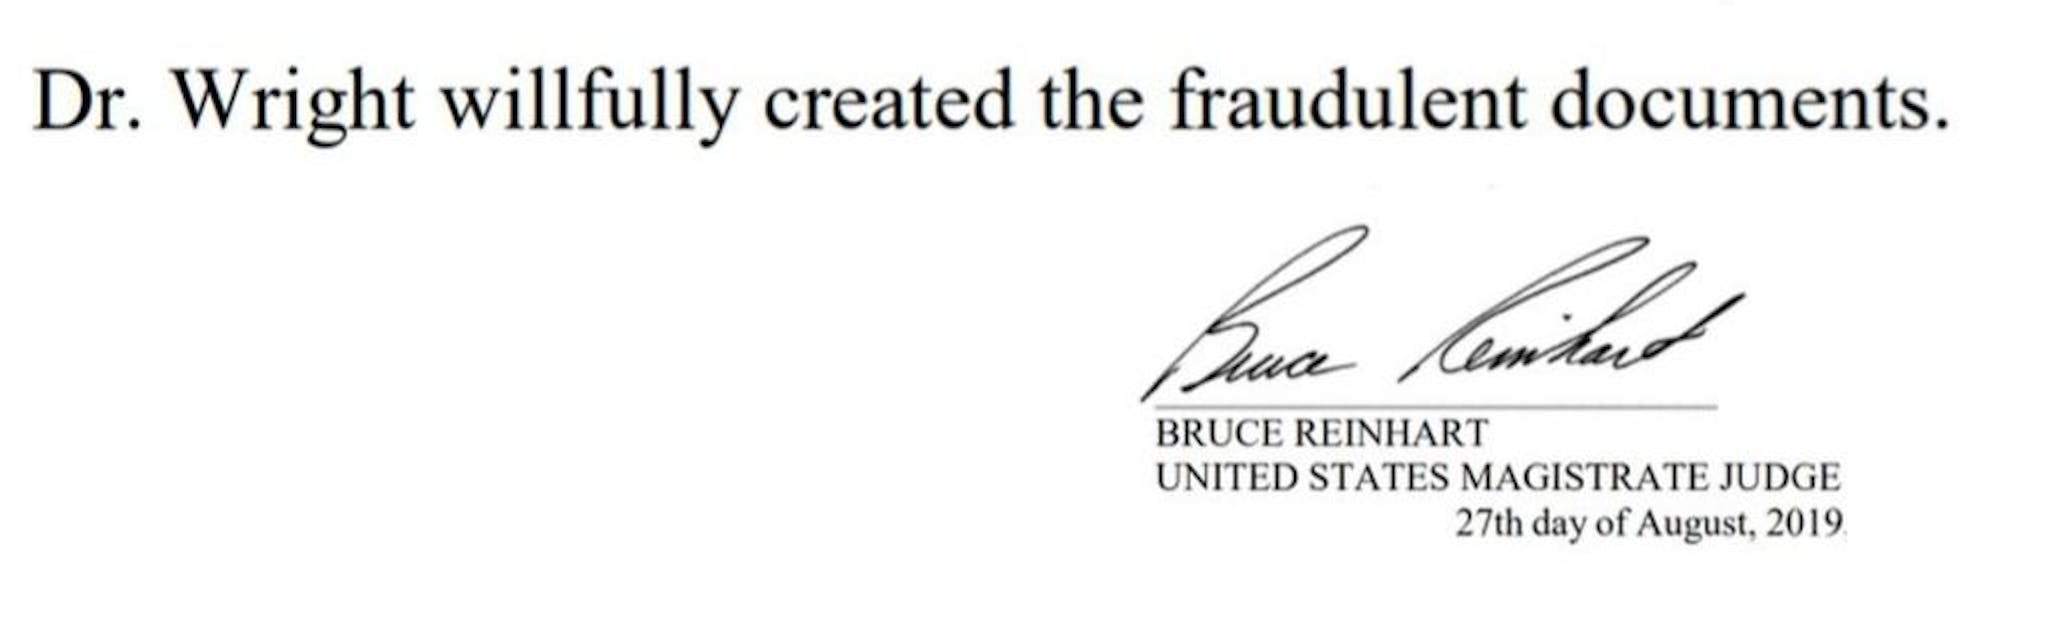 O juiz dos EUA disse que Craig Wright criou documentos fraudulentos